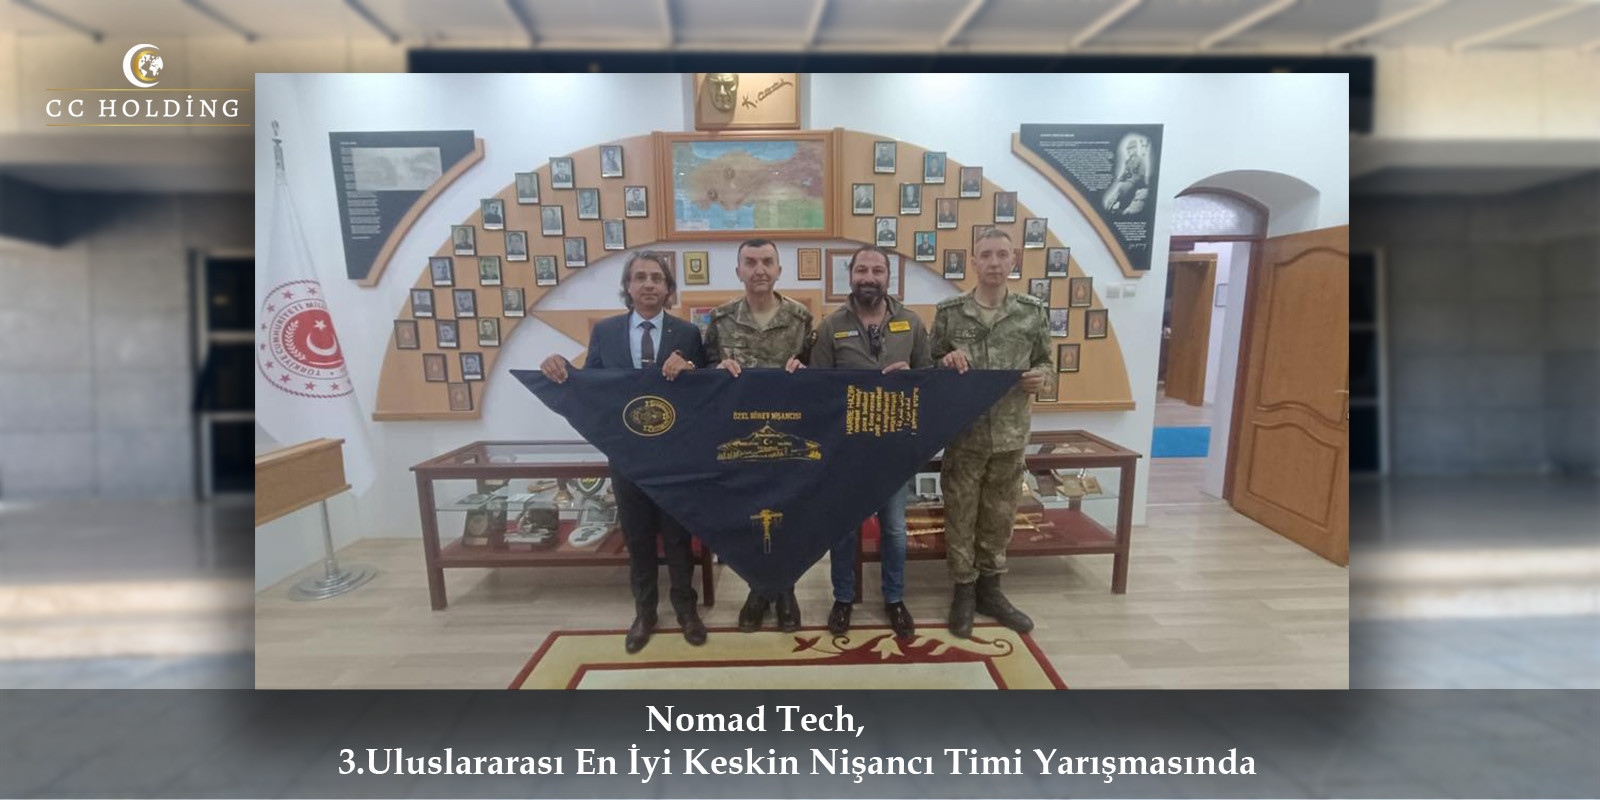 Nomad Tech, 3. Uluslararası En İyi Keskin Nişancı Timi Yarışması'nda Yer Aldı.